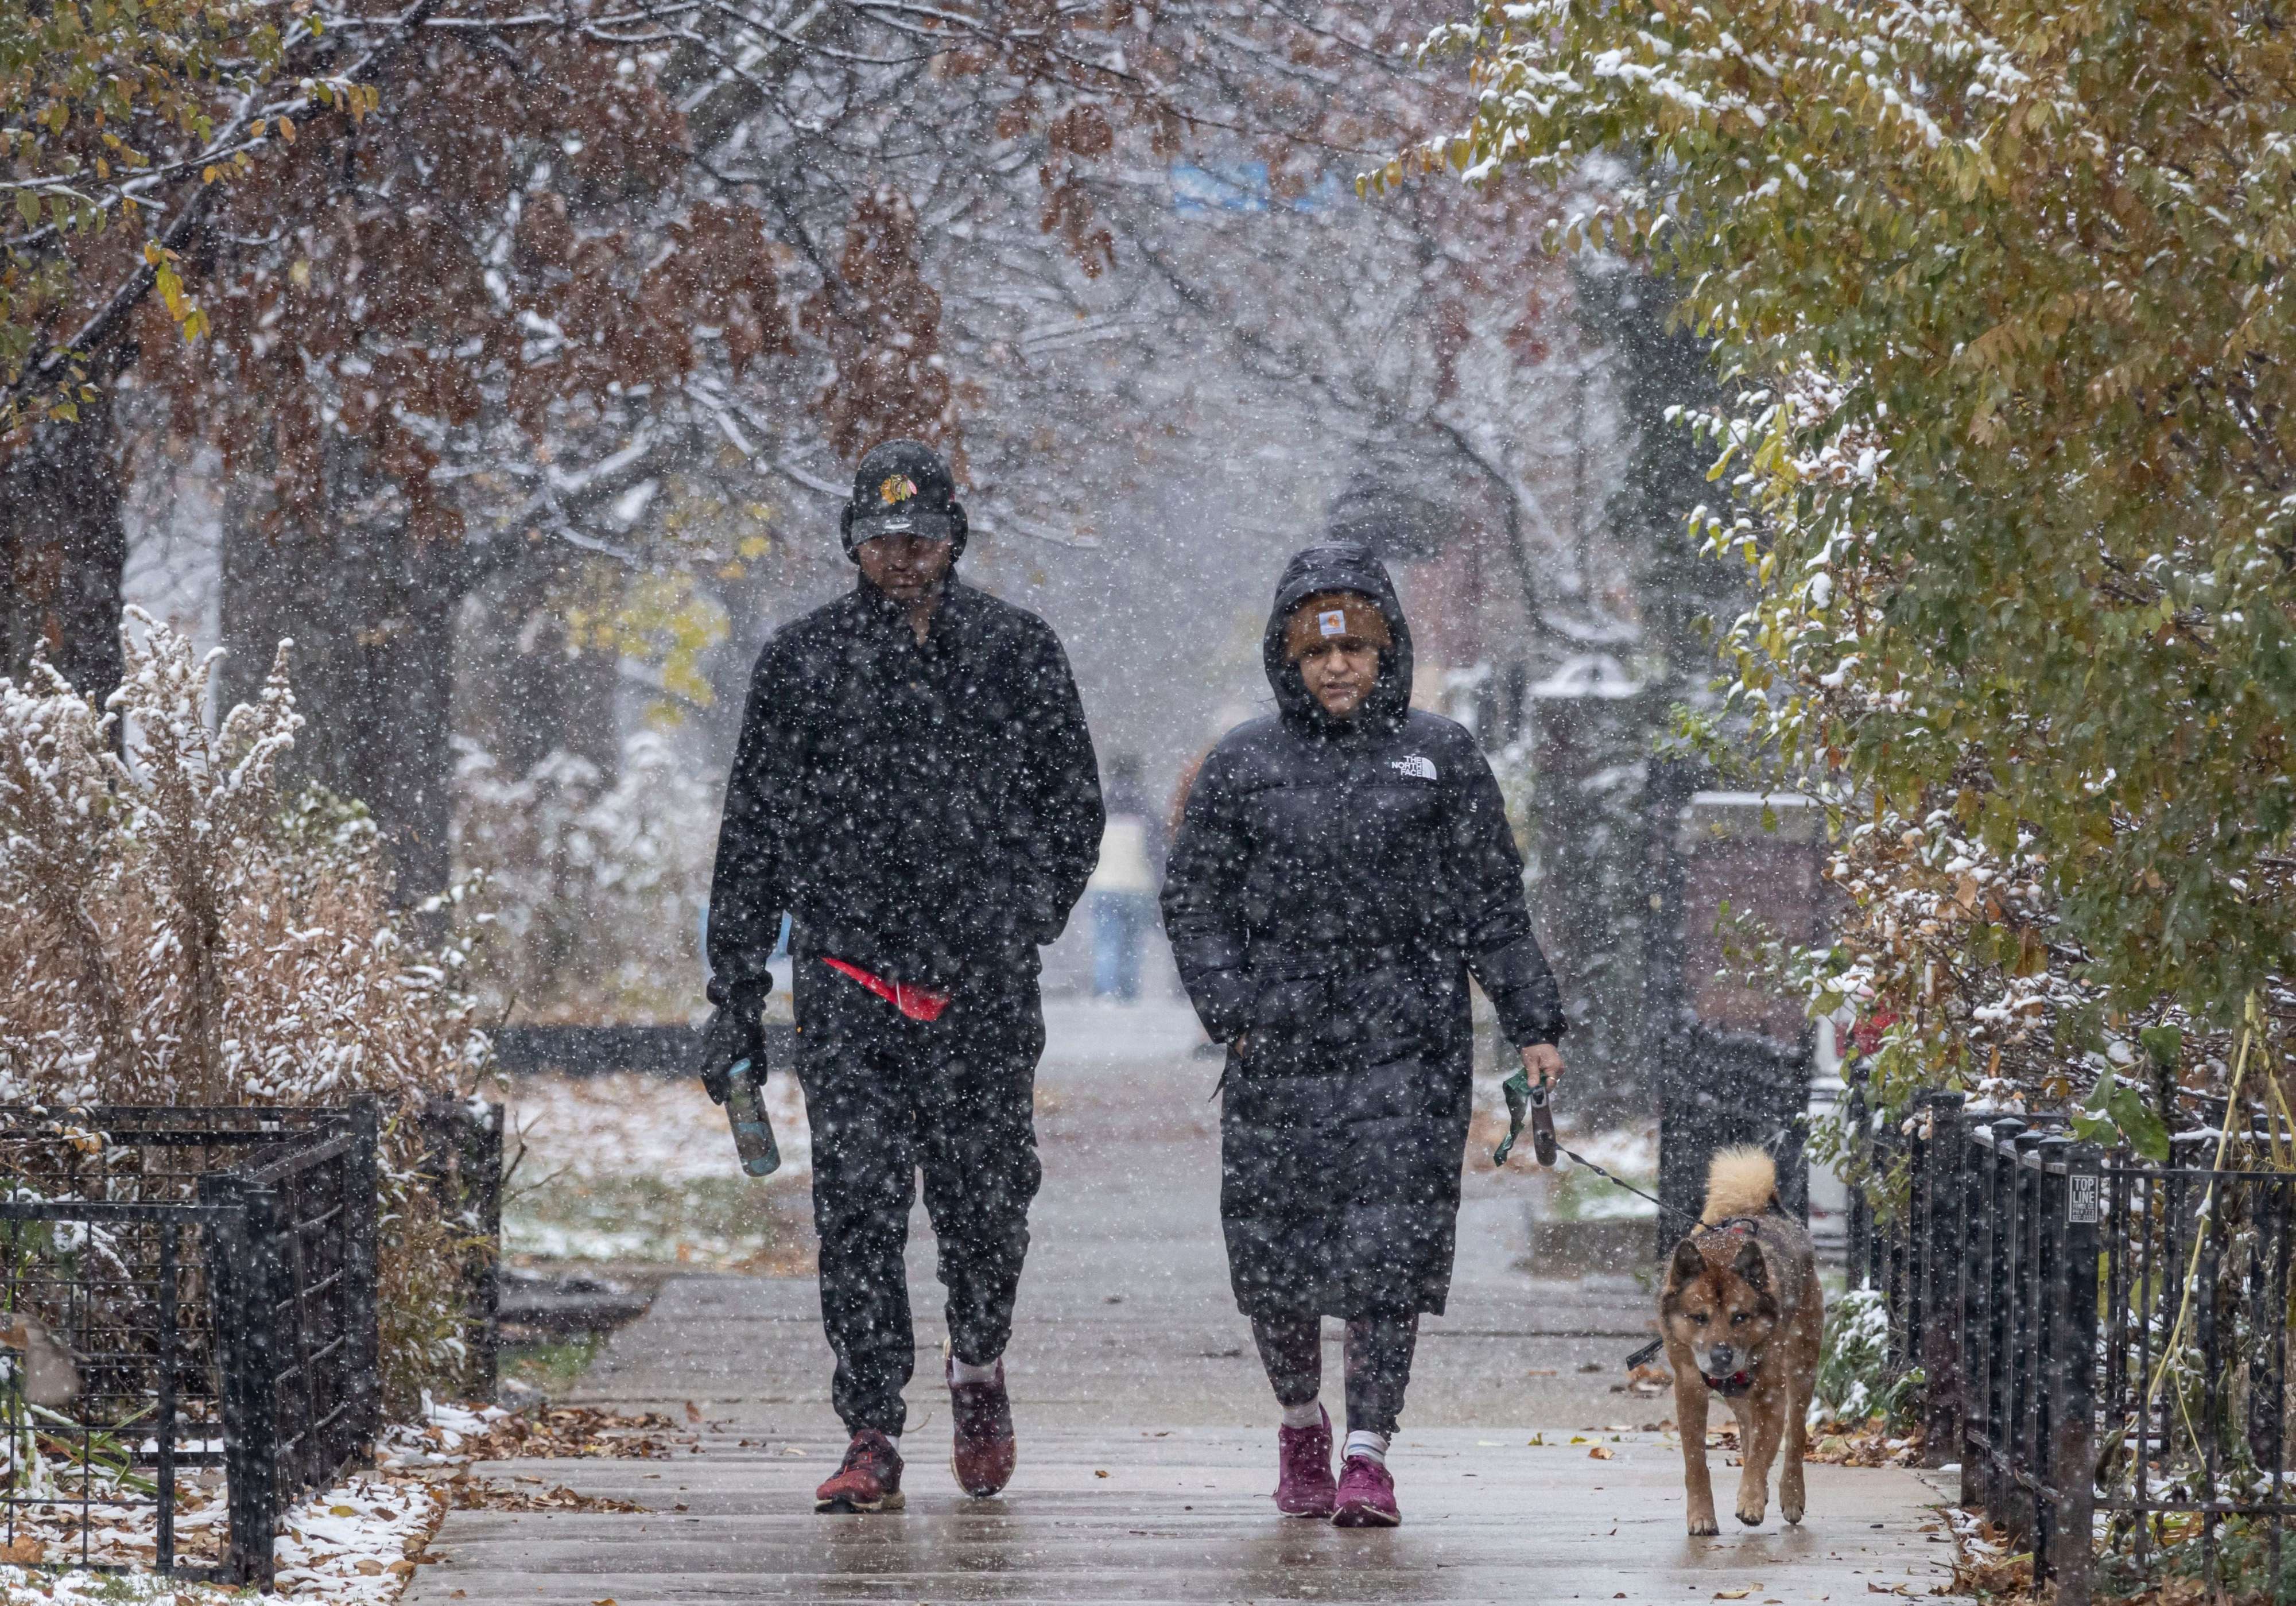 se espera un fuerte invierno de el niño, según los científicos. esto es lo que significa para la nieve y las temperaturas en chicago